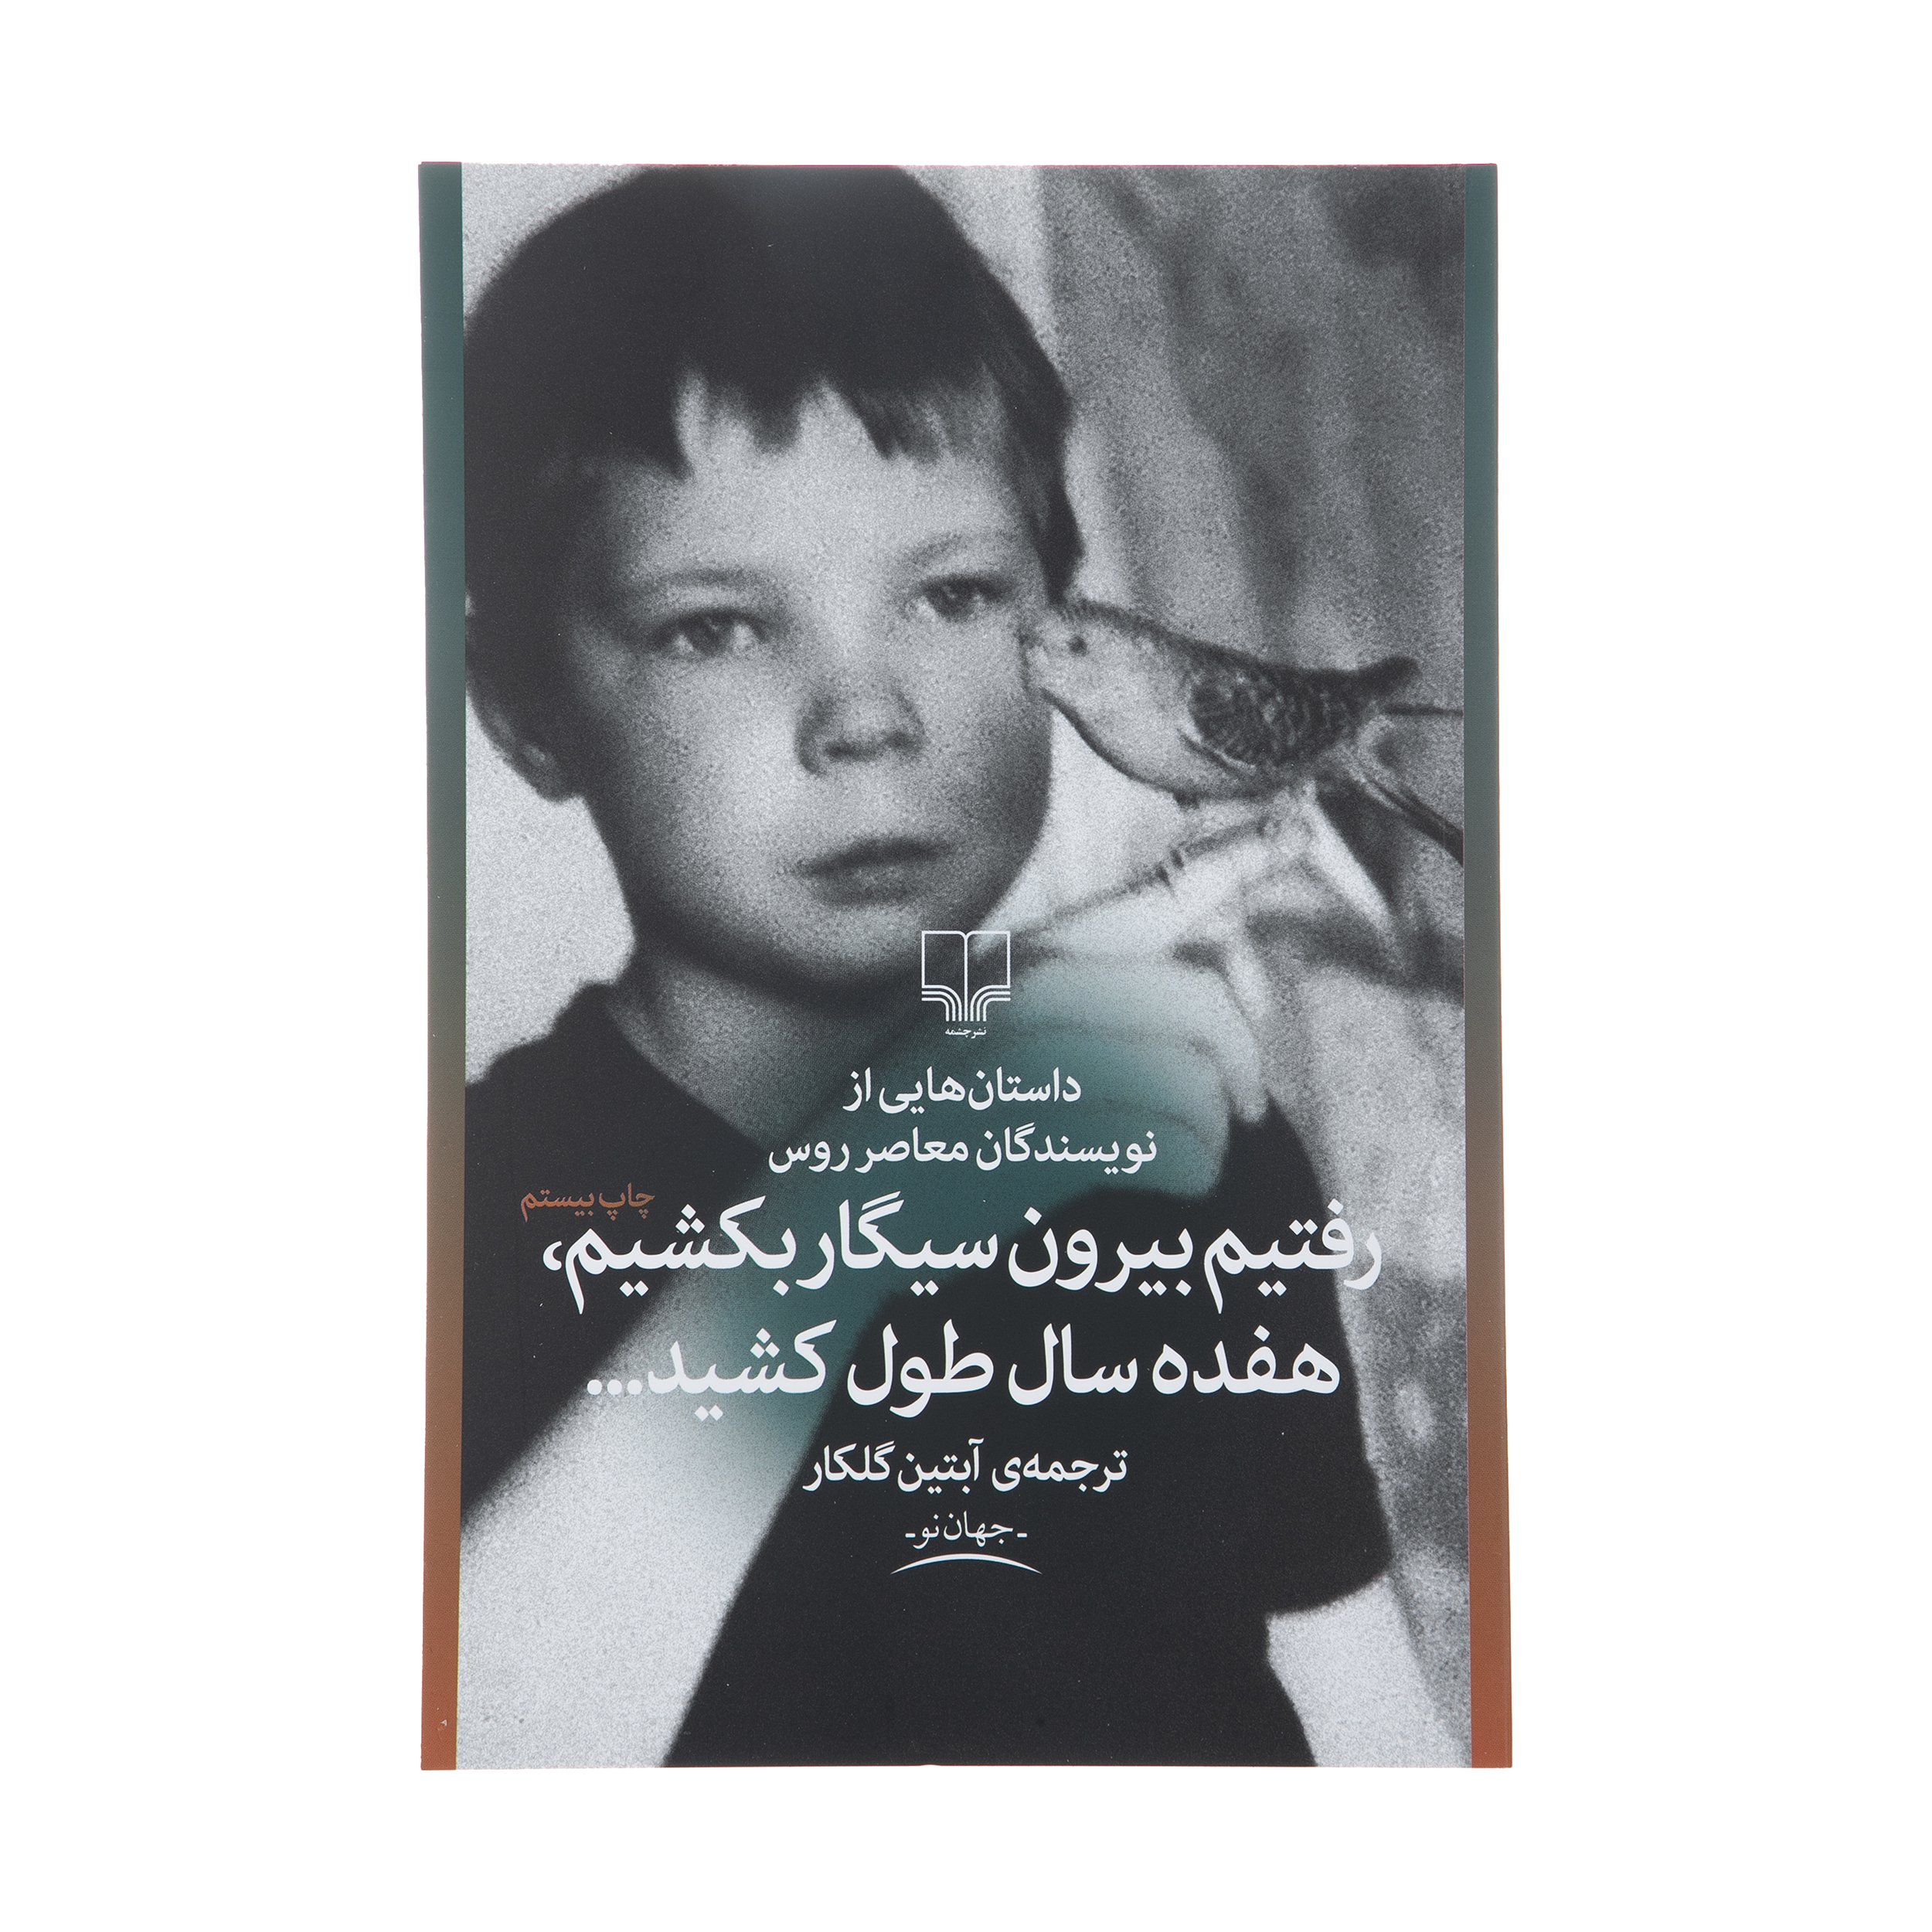 آنباکس کتاب رفتیم بیرون سیگار بکشیم هفده سال طول کشید اثر جمعی از نویسندگان توسط شهاب حاجیان در تاریخ ۲۹ اسفند ۱۳۹۸